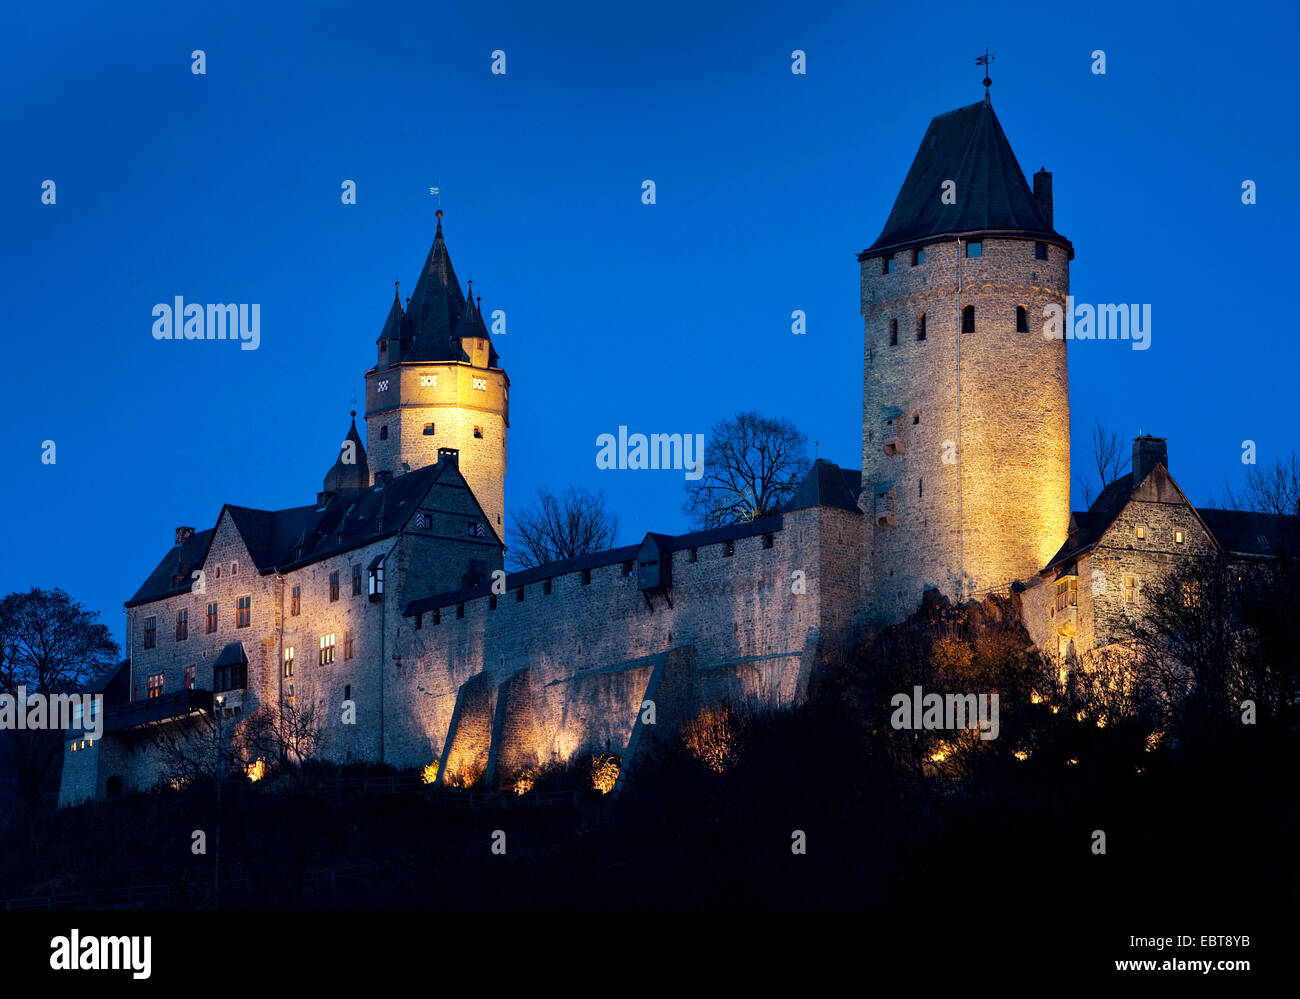 beleuchtete Burg Altena am Abend, Altena, Sauerland, Nordrhein-Westfalen, Deutschland Stockfoto